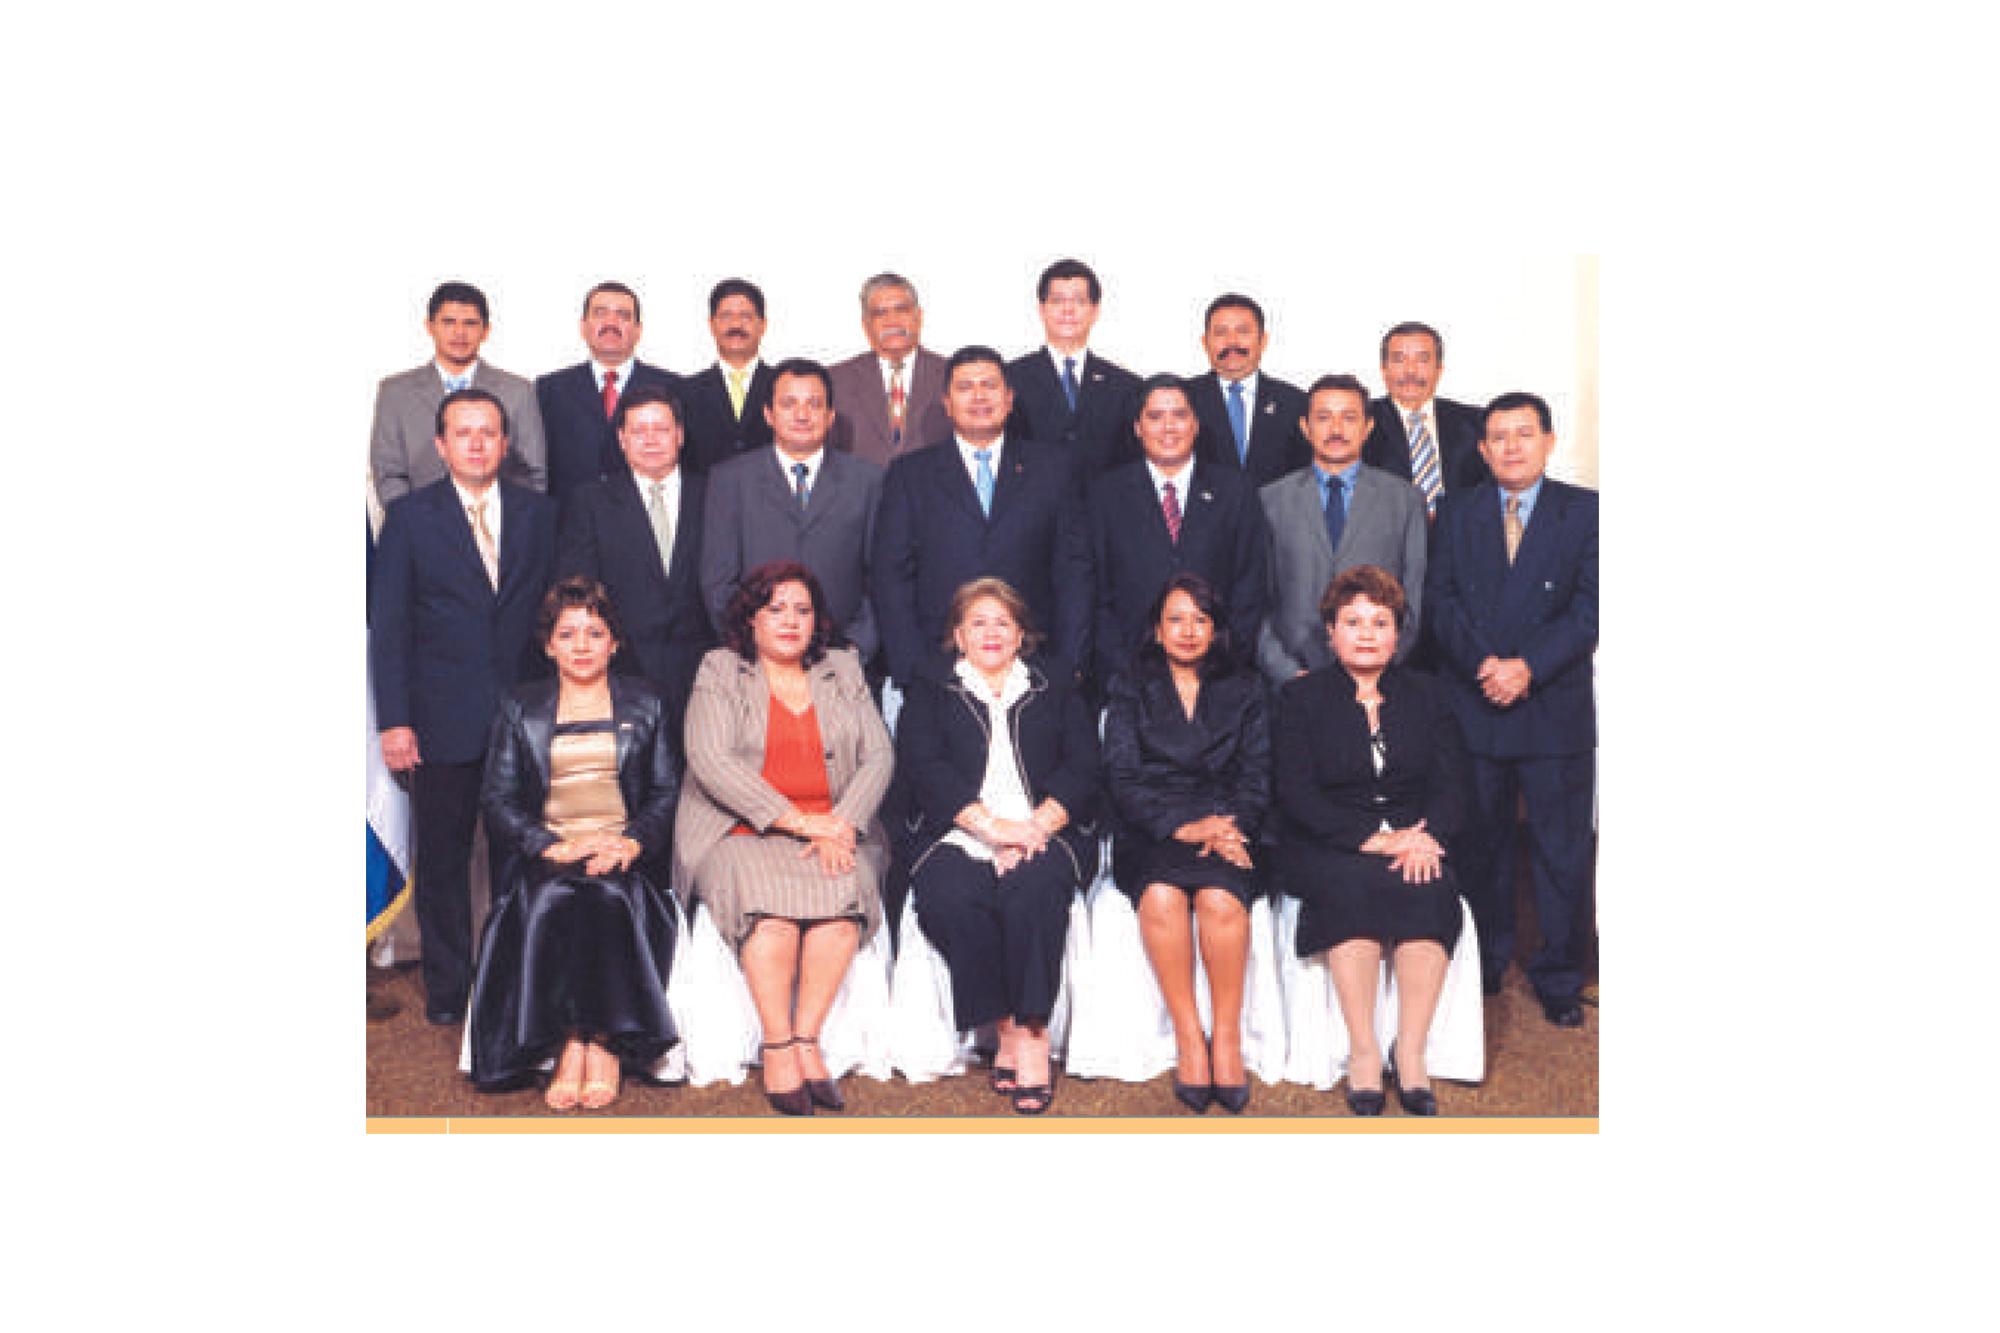 Consejo de directores de Comures y su junta directiva, periodo 2006-2009. Fotografía extraída de la memoria de labores de Comures para el año 2007.